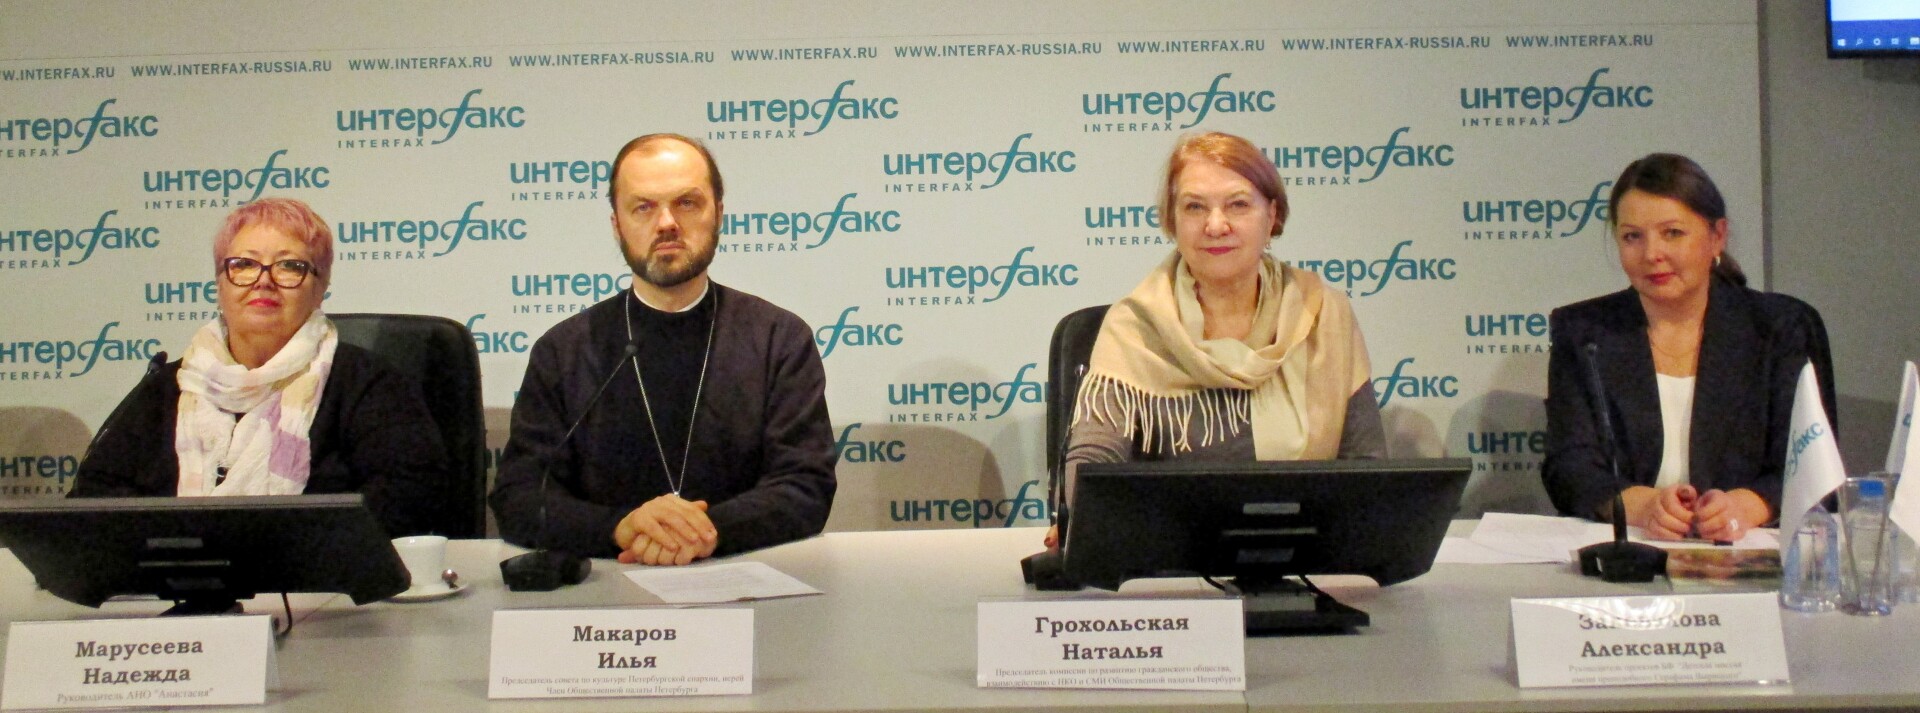 Проблемы работы НКО в новых реалиях обсудят в Петербурге